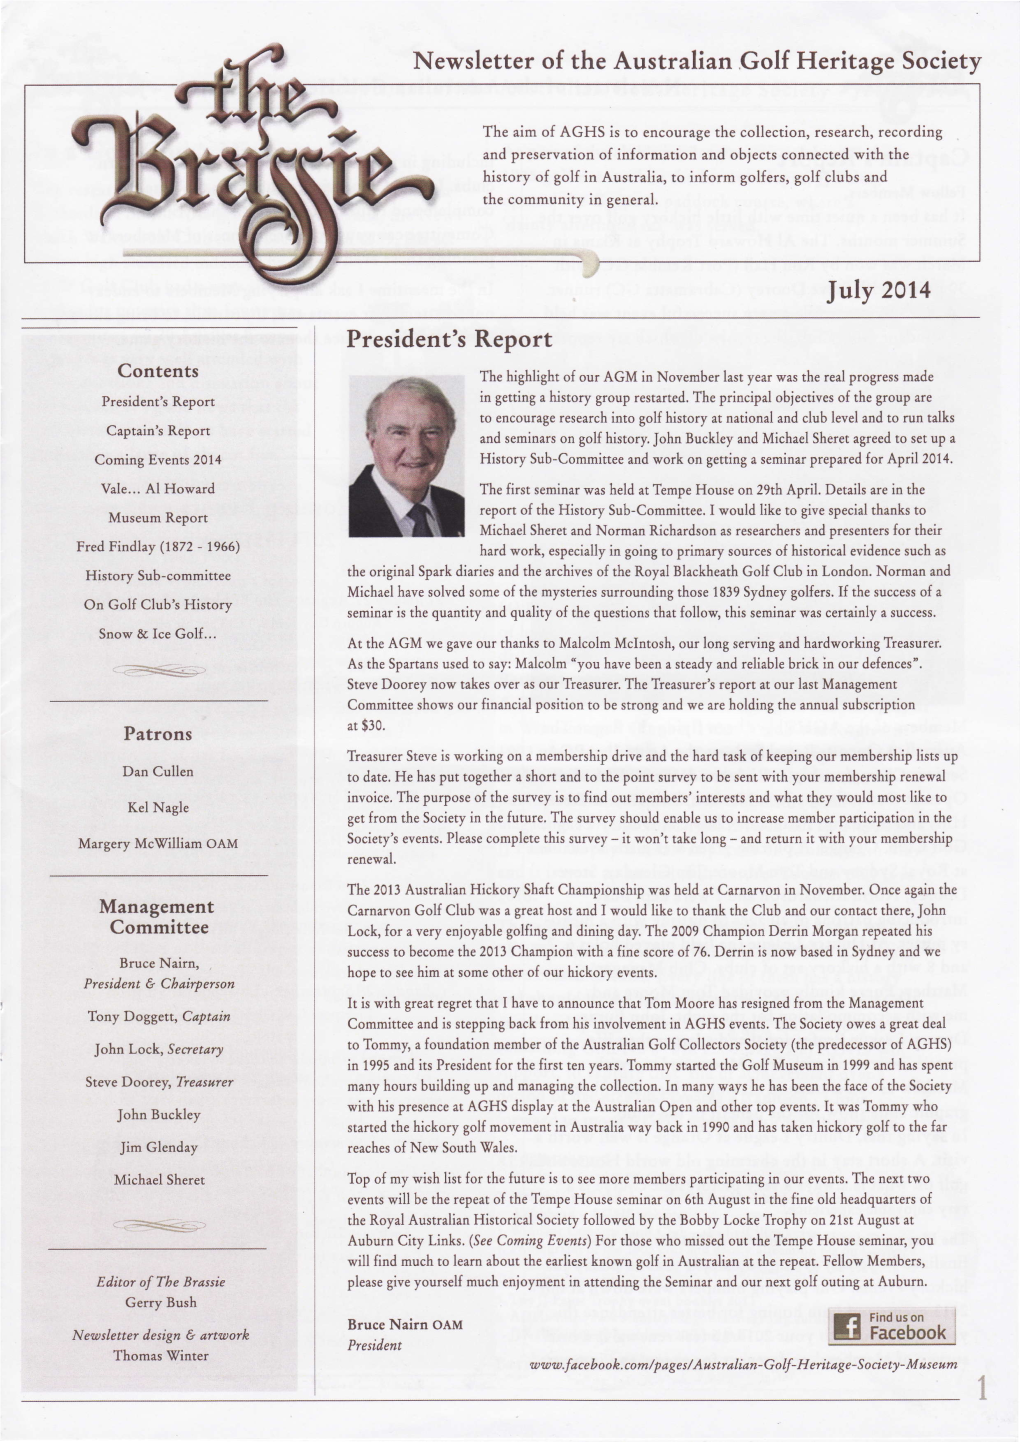 Newsletter of the Australian Golf Heritage Society President's Report